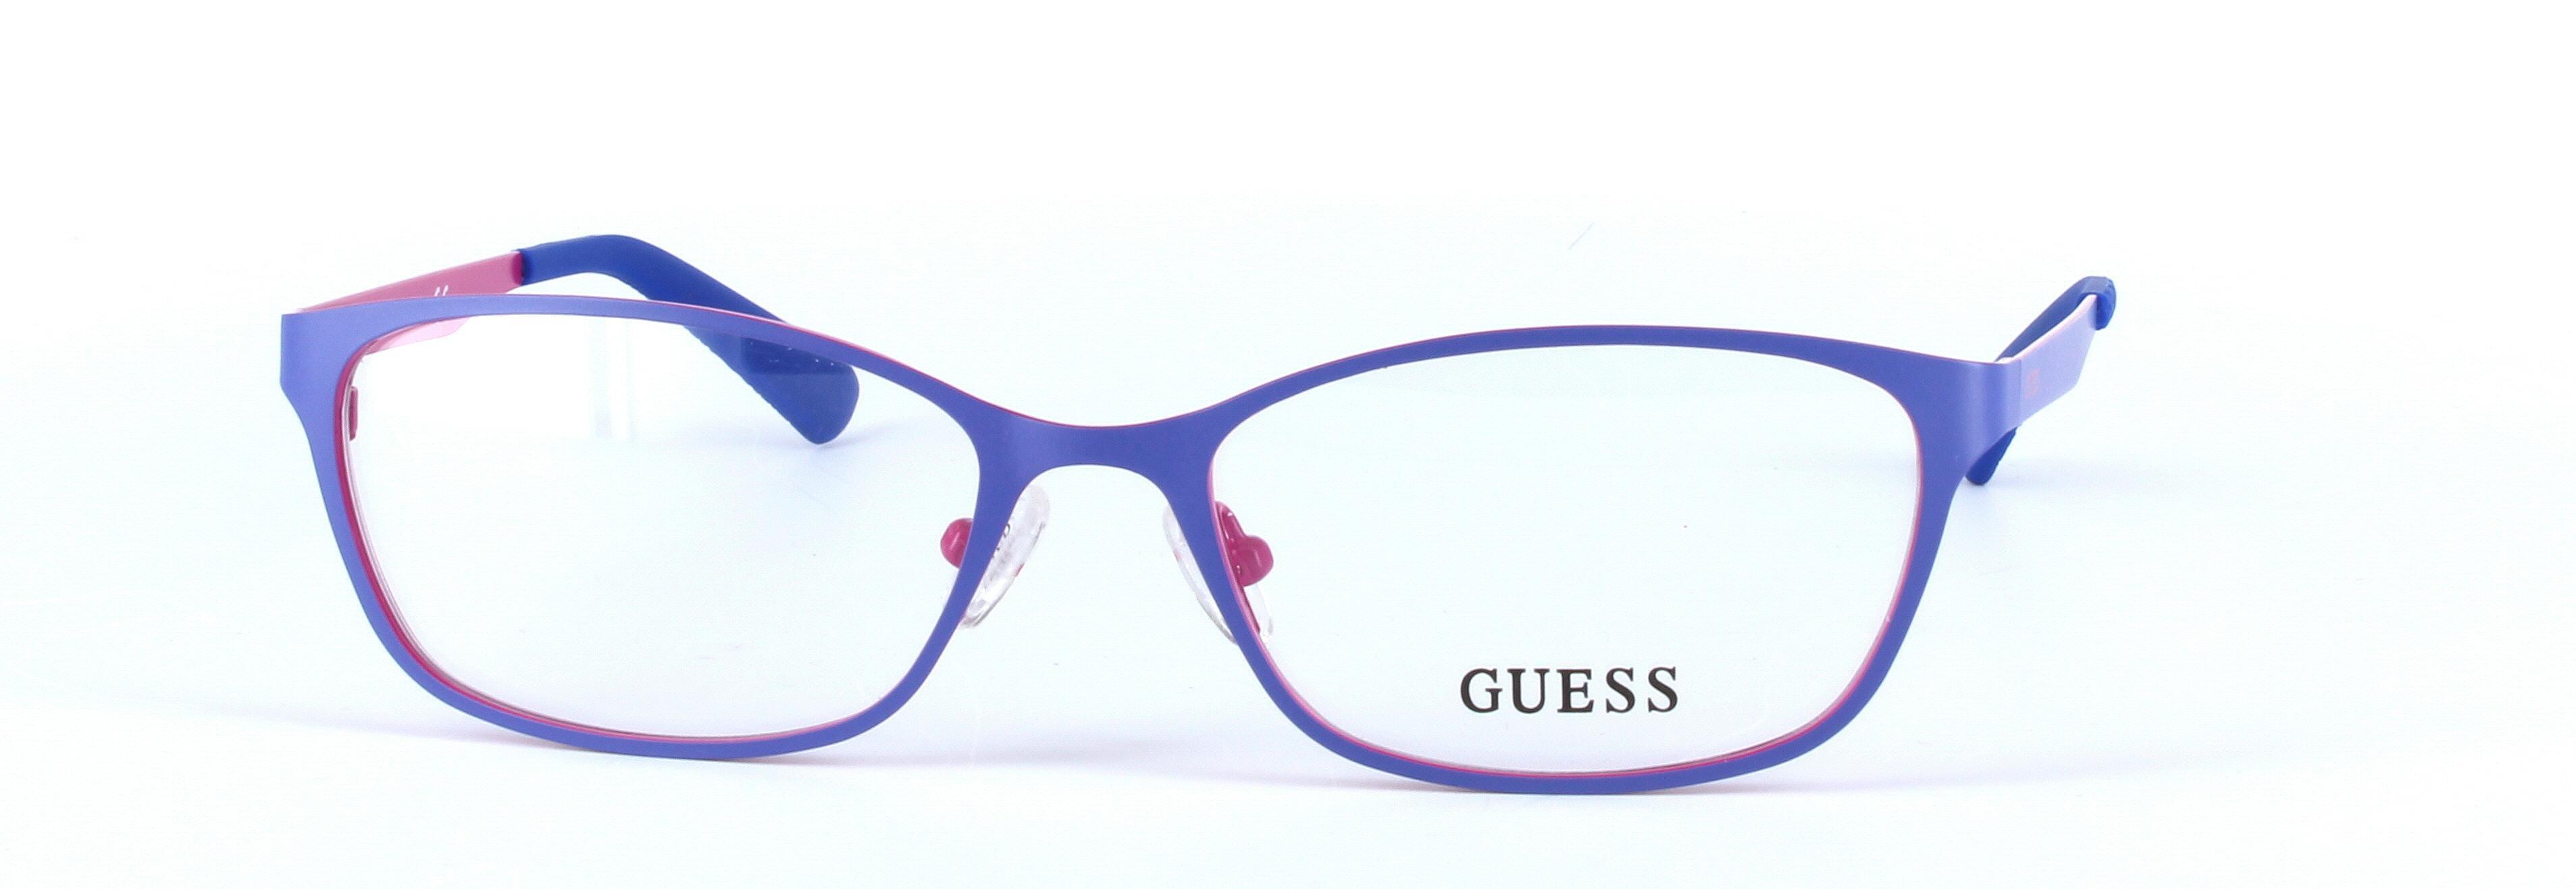 GUESS (GU2563-091) Blue Full Rim Oval Rectangular Metal Glasses - Image View 5